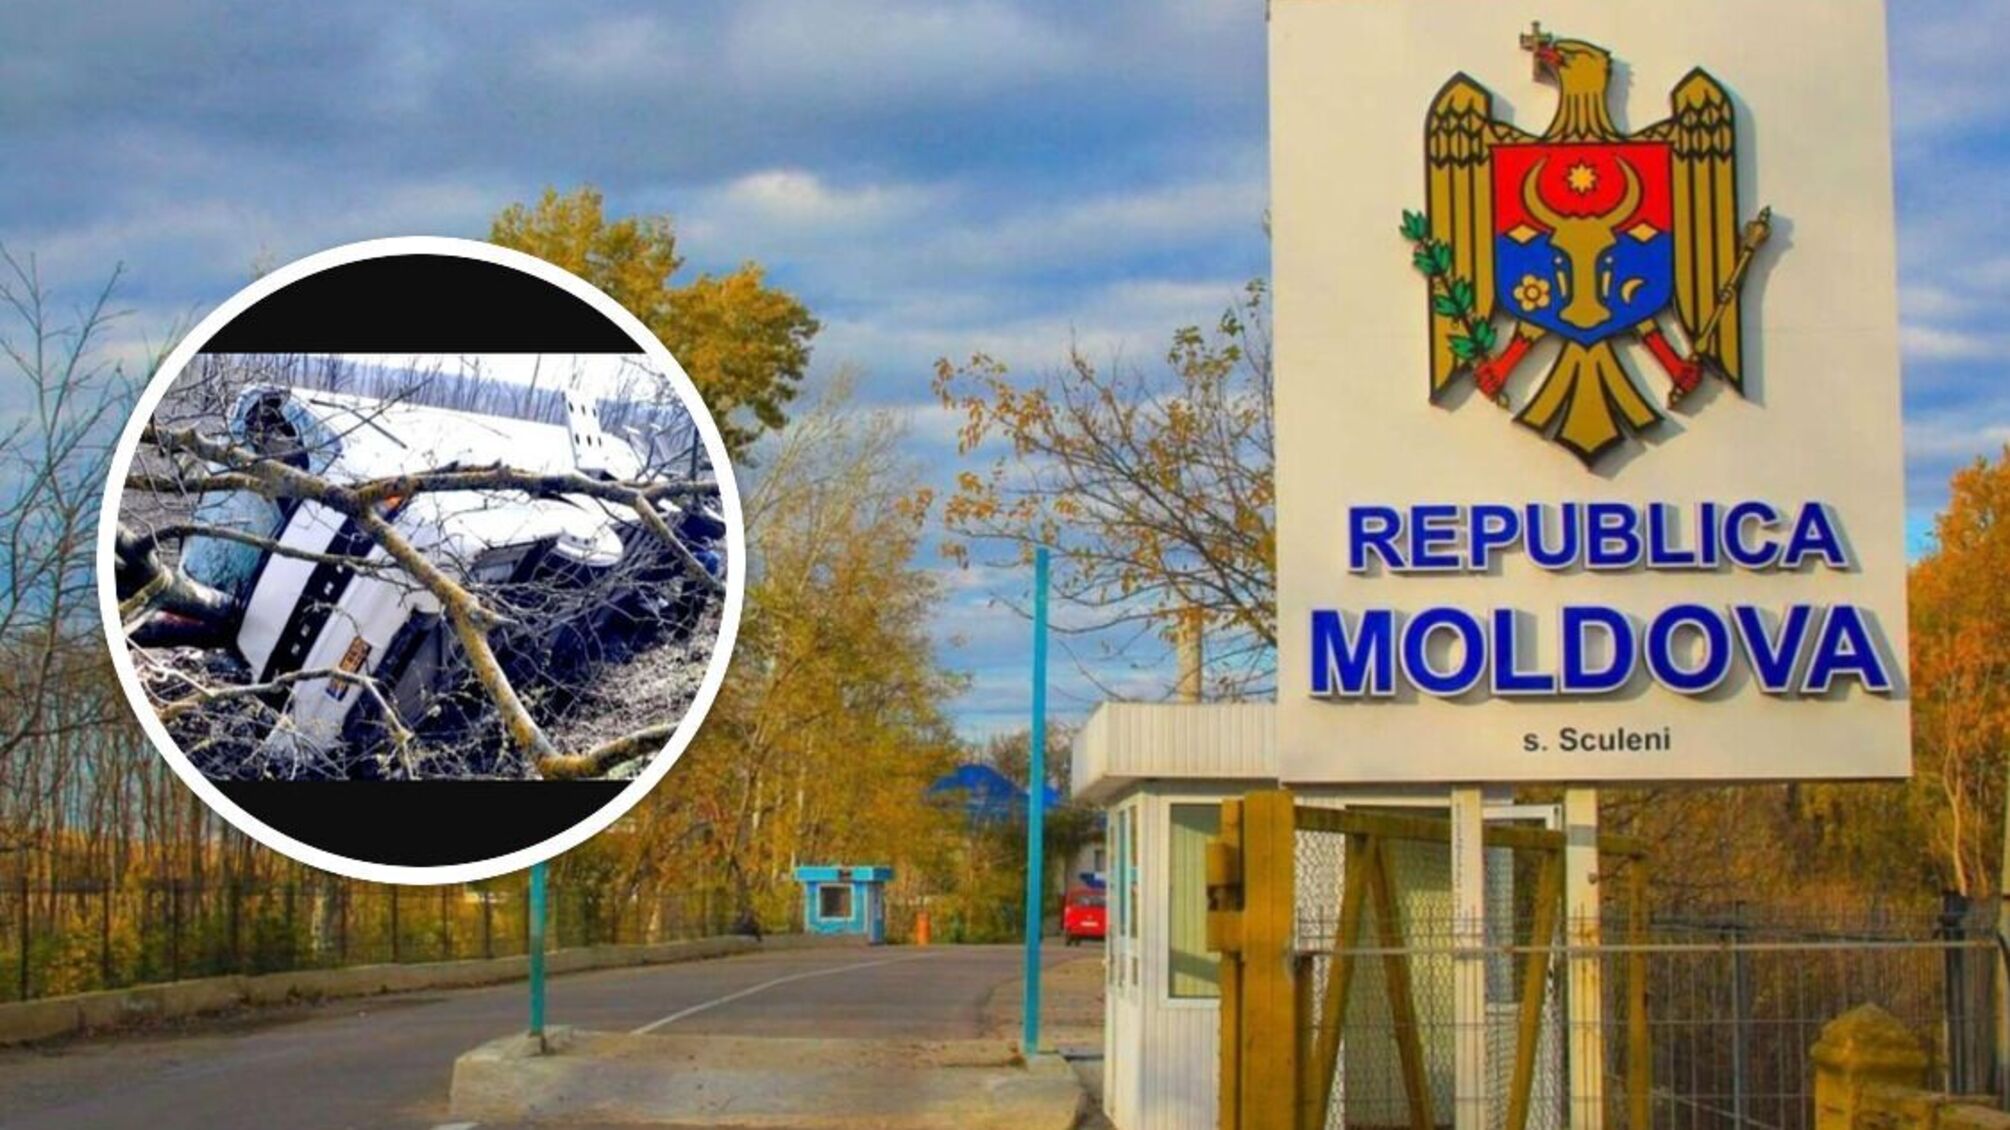 ДТП в Молдове: перевернулся рейсовый автобус с пассажирами, среди пострадавших есть украинцы - детали